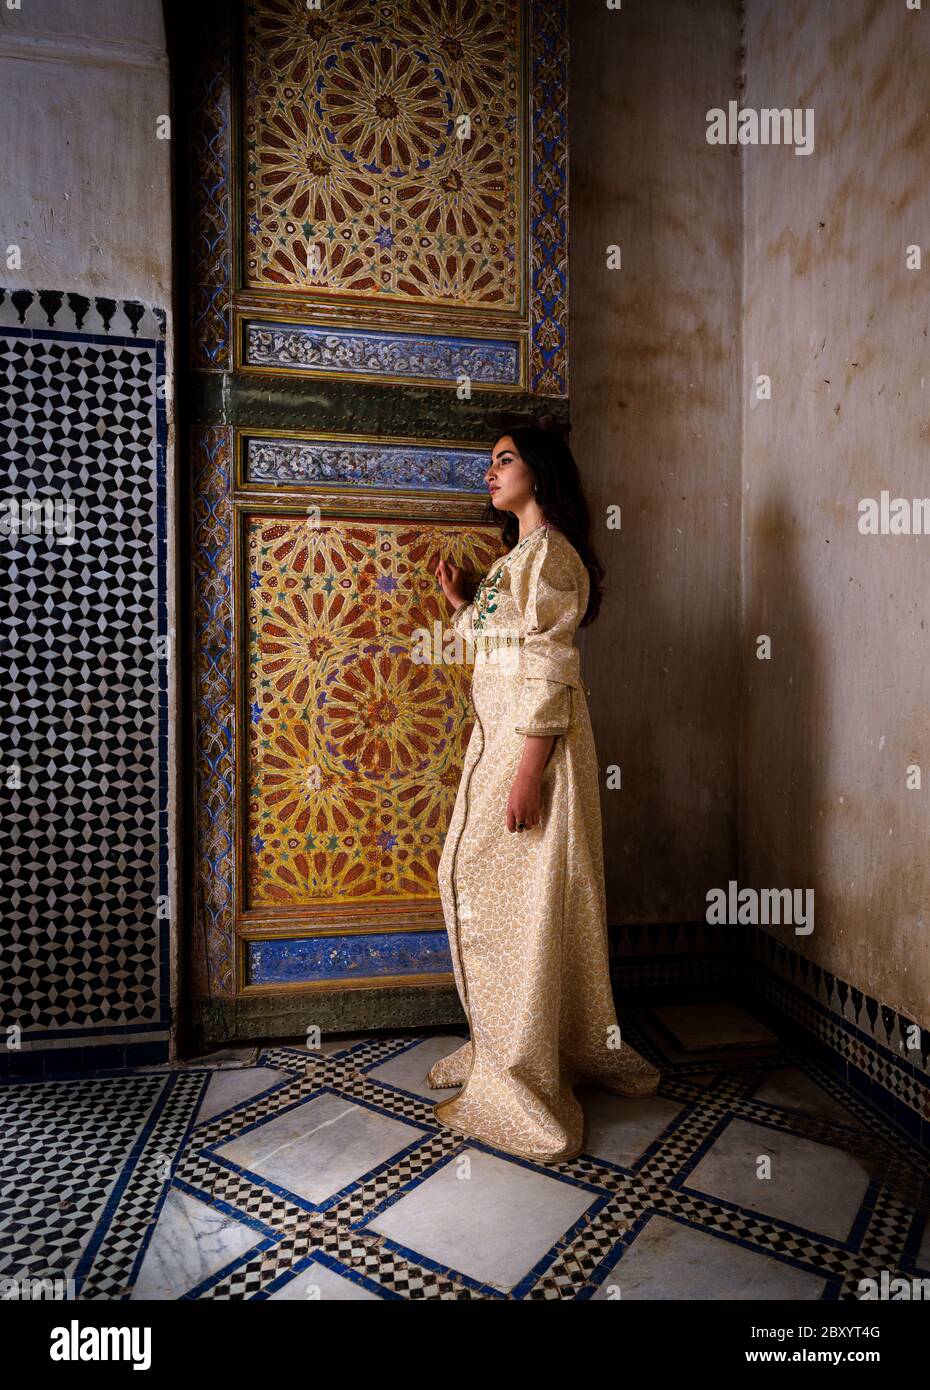 FÈS, MAROC - VERS MAI 2018 : jeune femme marocaine en robe traditionnelle assise près d'une porte marocaine à Fès Banque D'Images